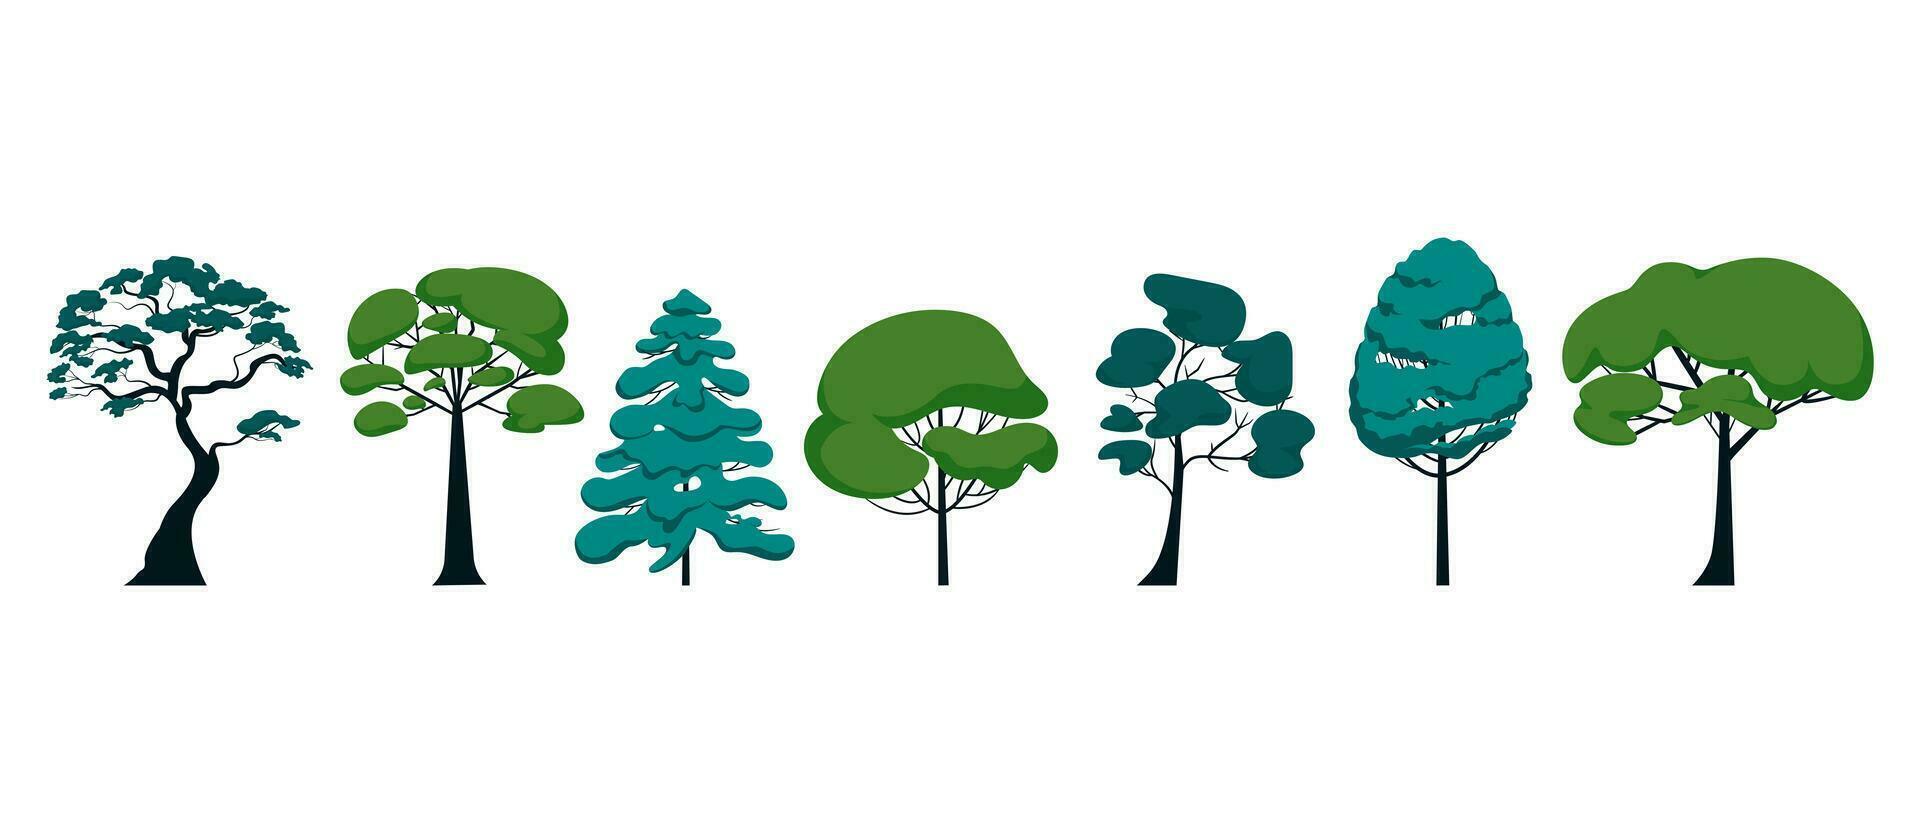 uppsättning av annorlunda tall och hårt träslag träd horisontell arrangemang. vektor illustration av parkera och natur isolerat objekt på vit